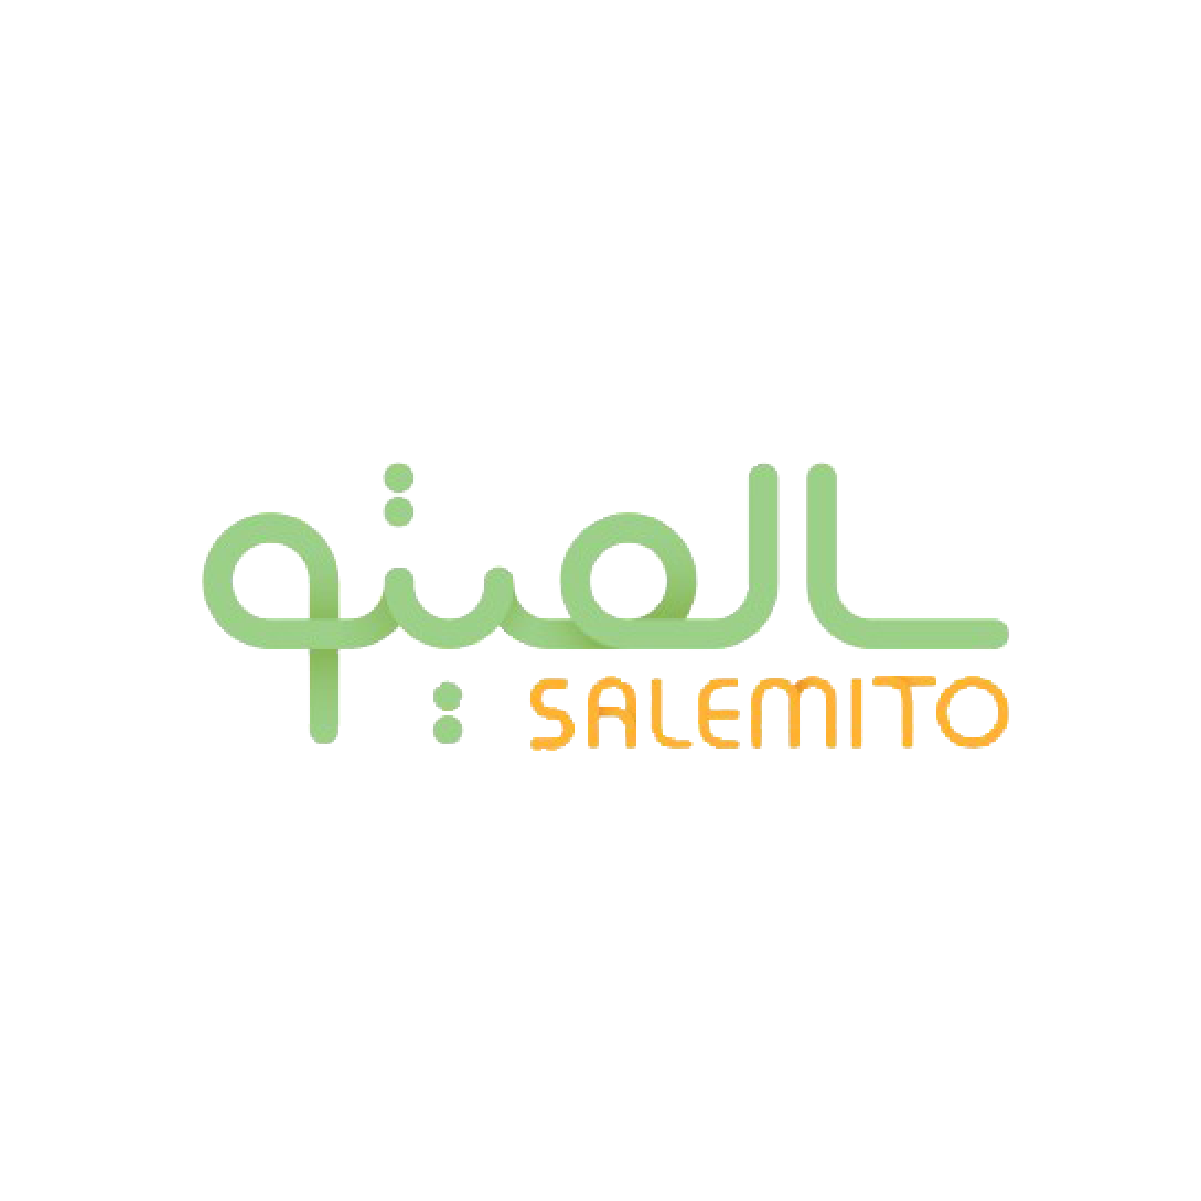 سالمیتو | Salemito